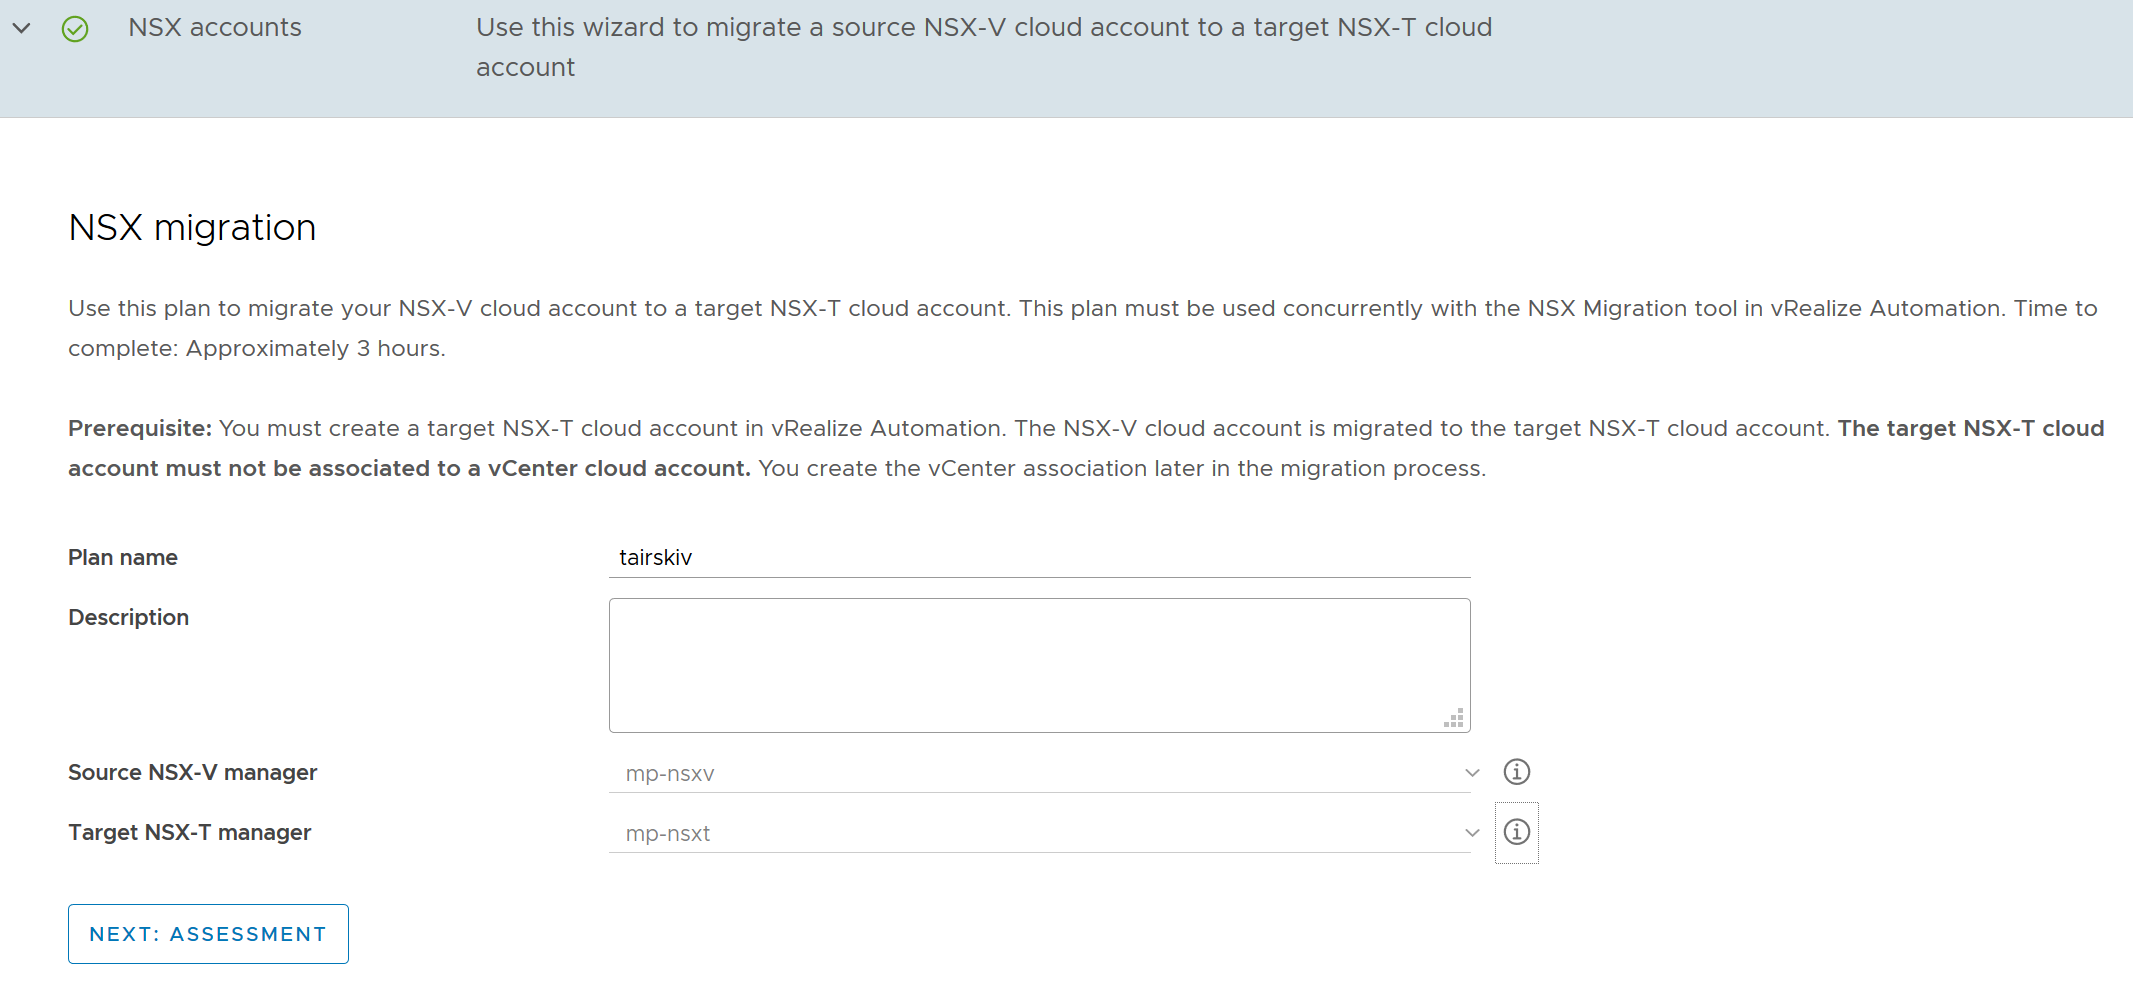 屏幕显示计划页面 1，其中显示了源 NSX-V 和目标 NSX-T 云帐户